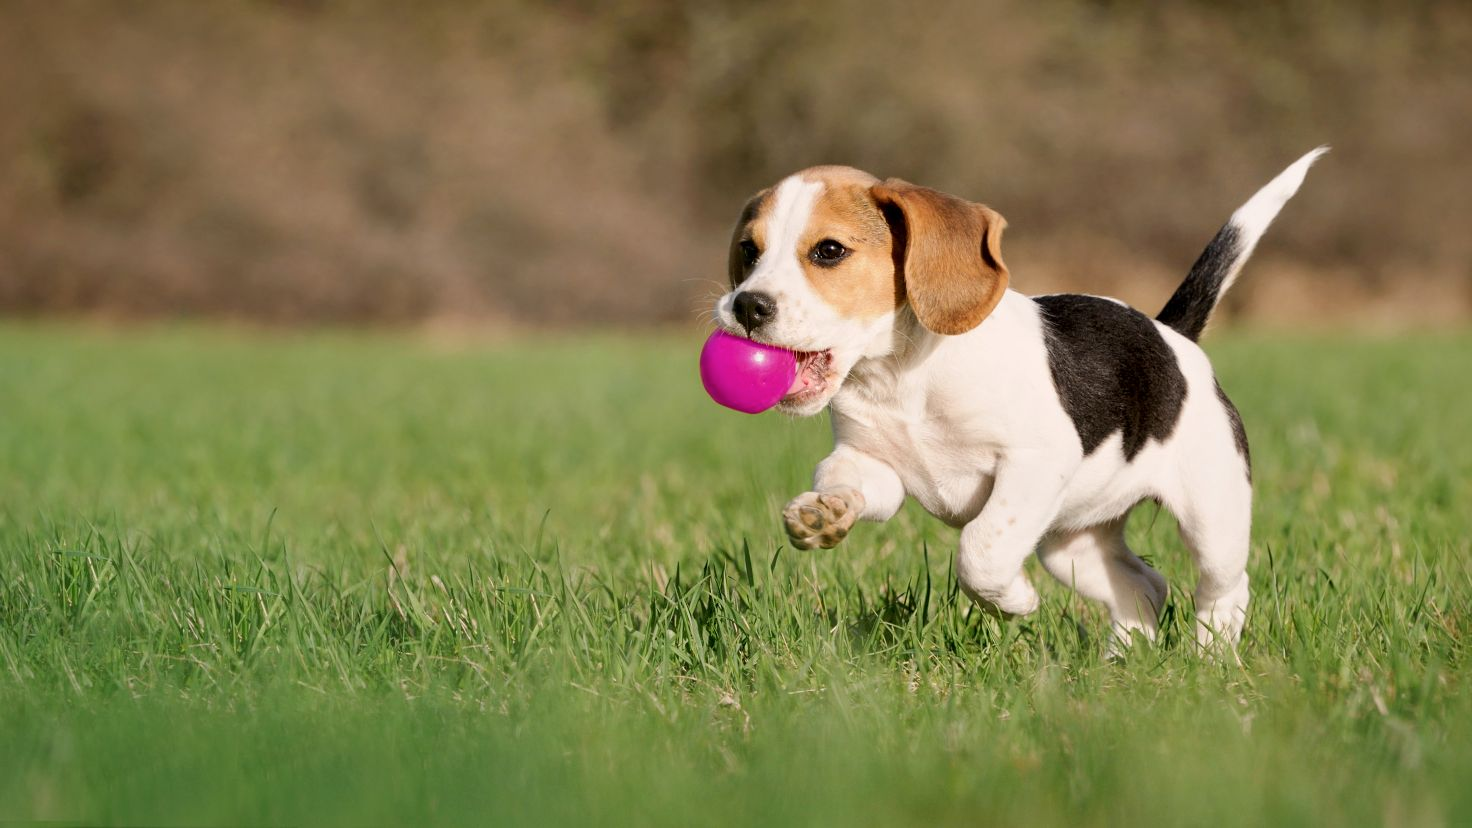 Chiot beagle courant avec une balle rose dans la bouche